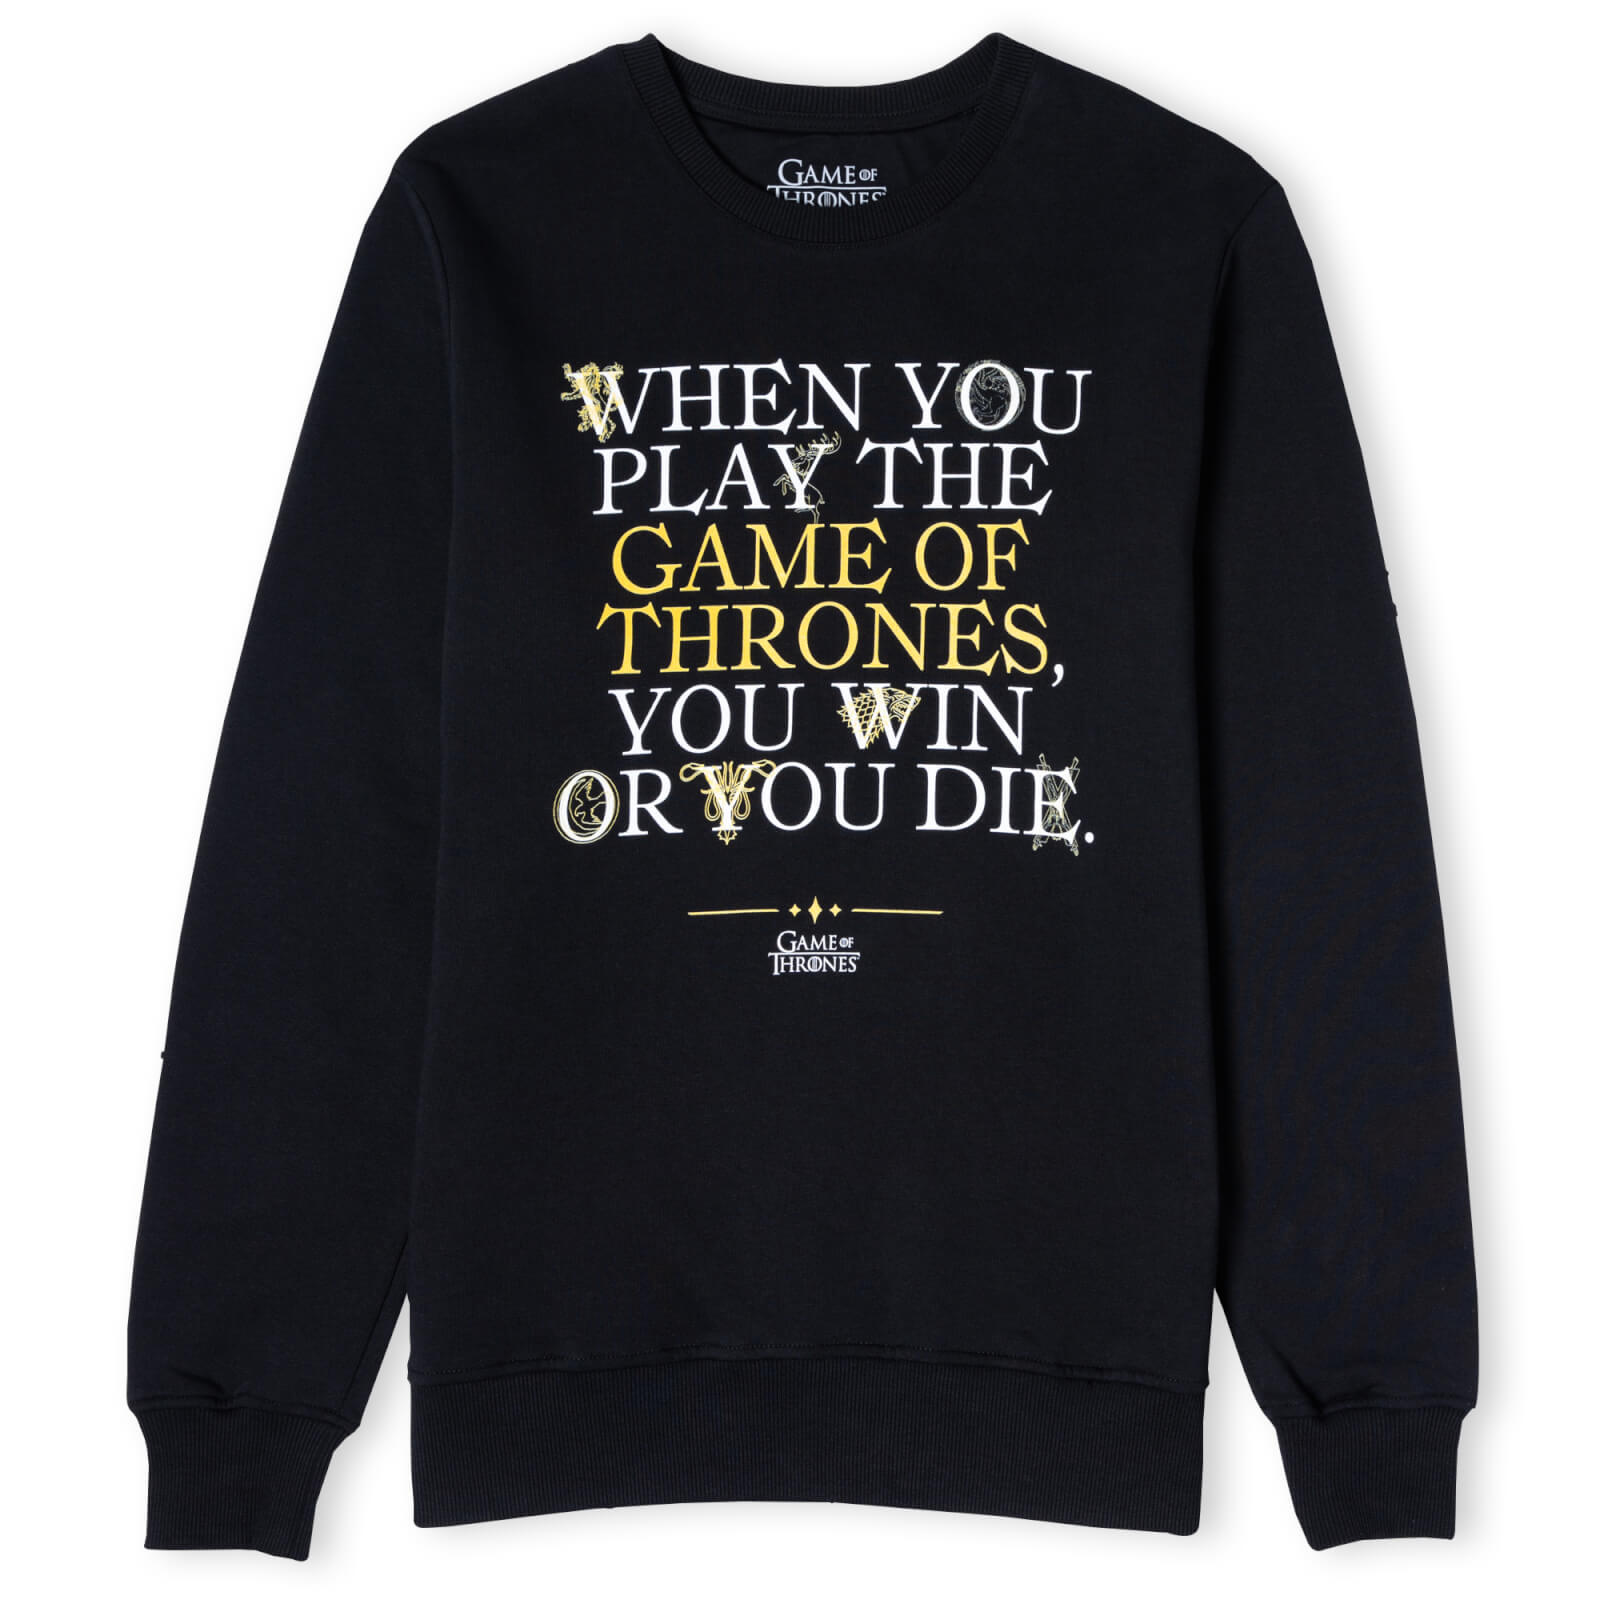 Game of Thrones Win Or Die Unisex Sweatshirt - Black - L - Black product